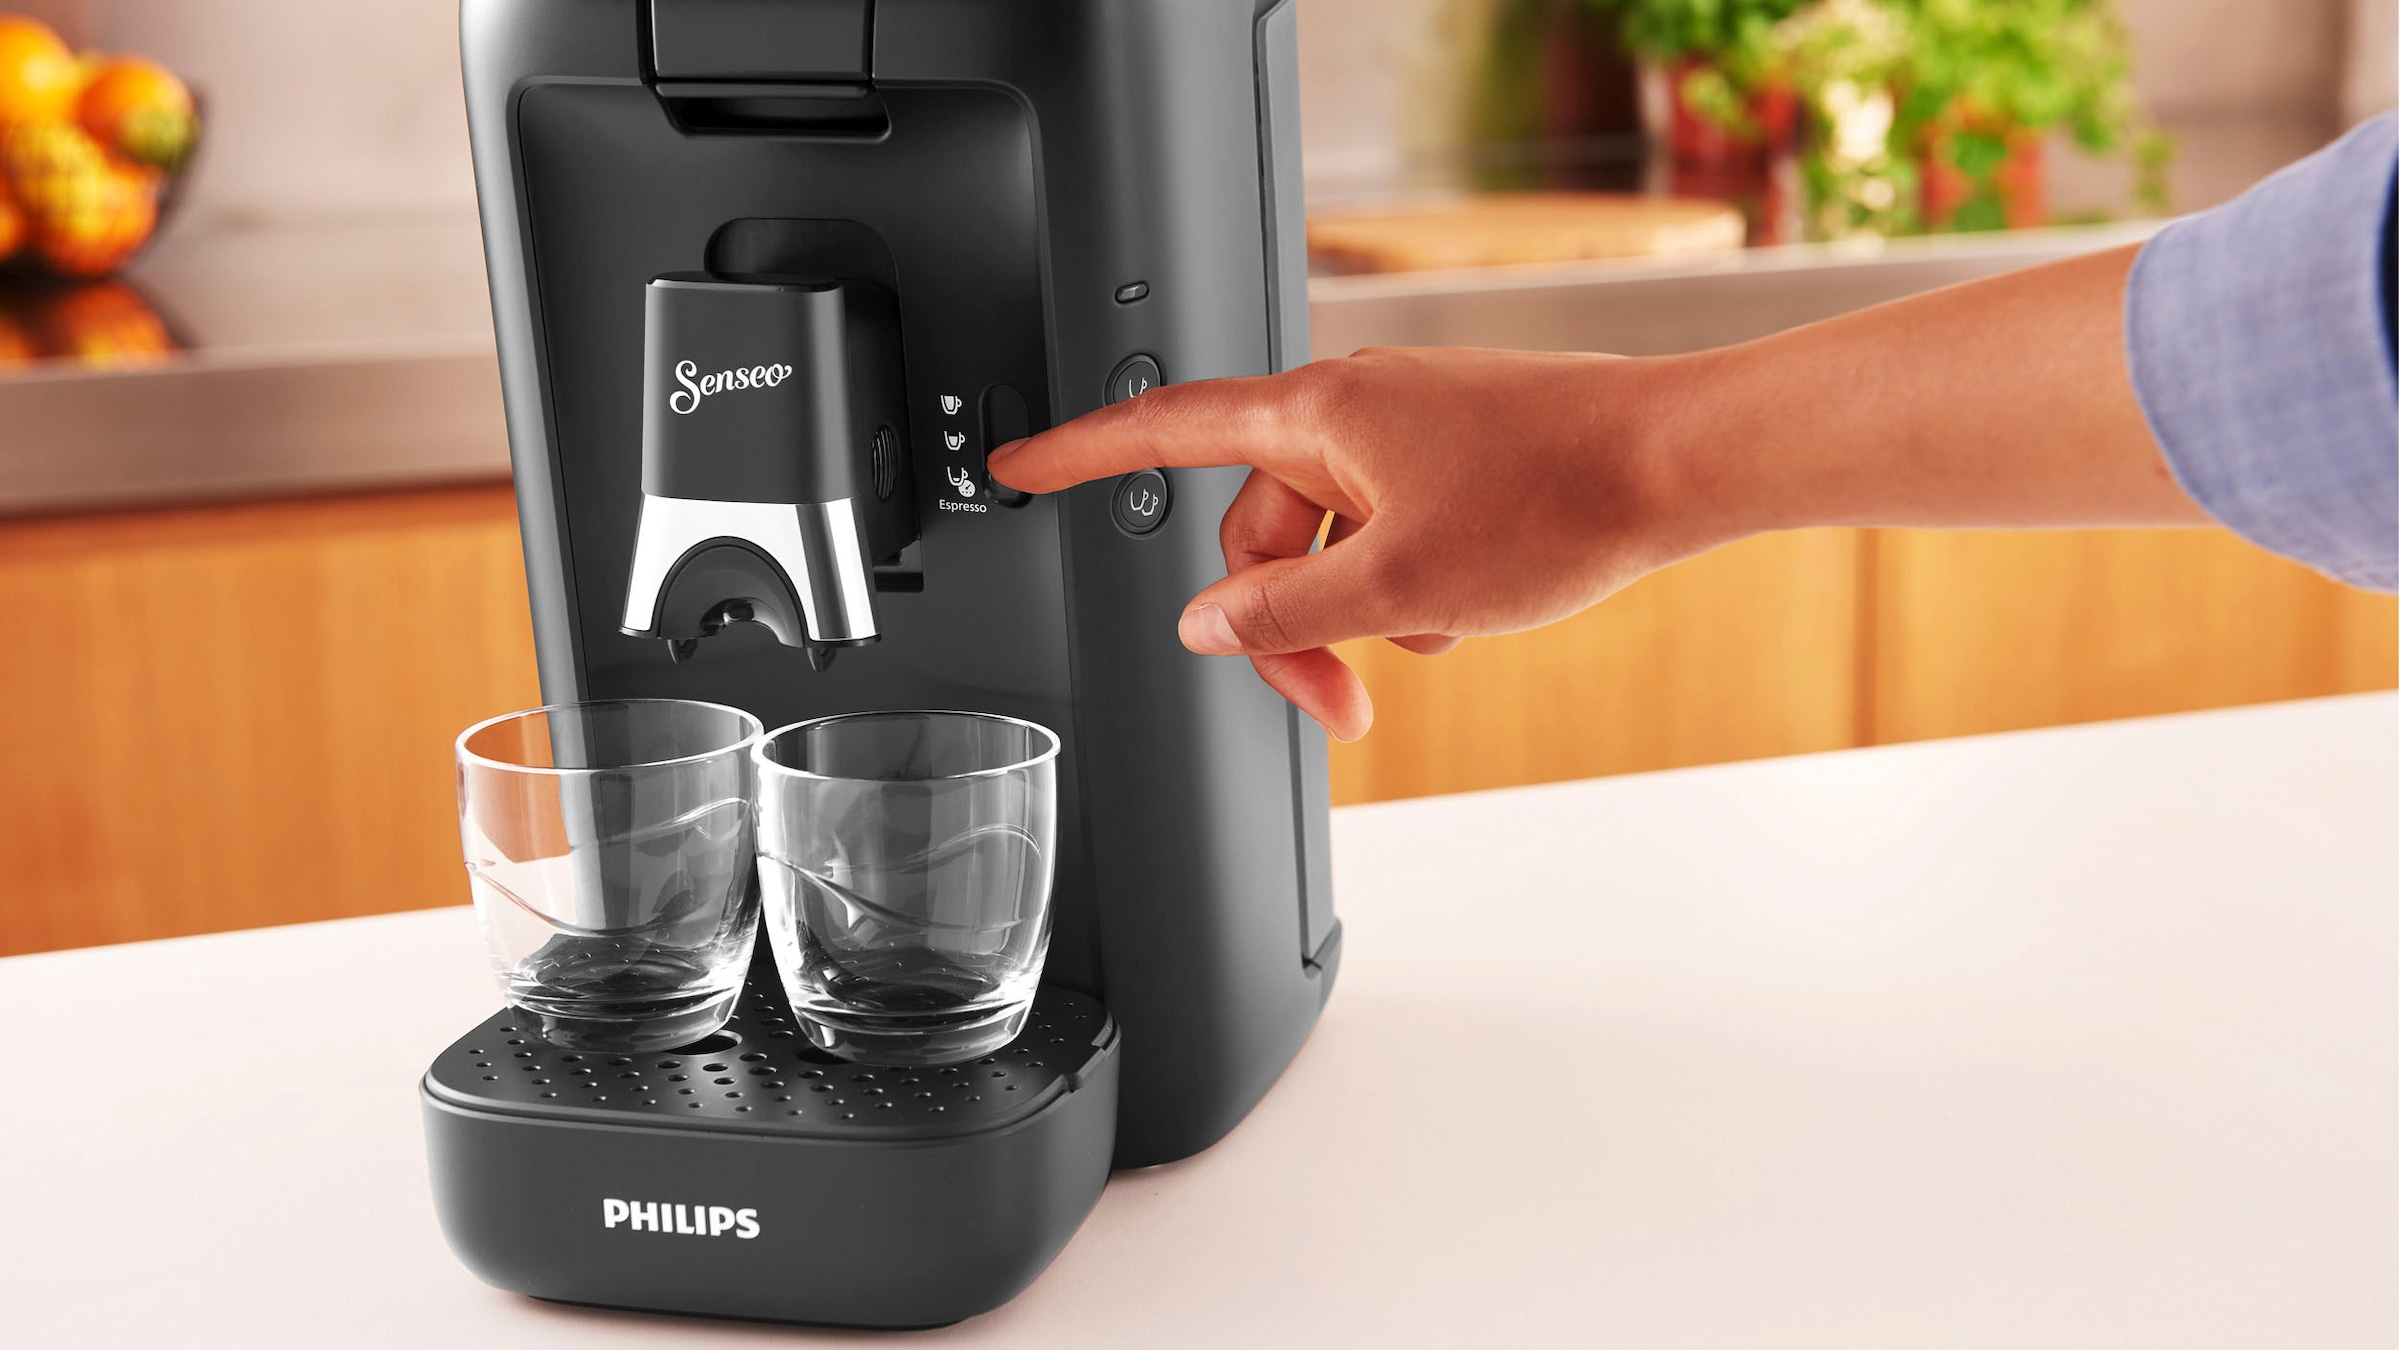 Philips Senseo Kaffeepadmaschine »Maestro CSA260/60, 80% von recyceltem UVP Memo-Funktion, Plastik, Kaffeespezialitäten«, Wert kaufen Gratis-Zugaben € im inkl. online 14,- +3 aus